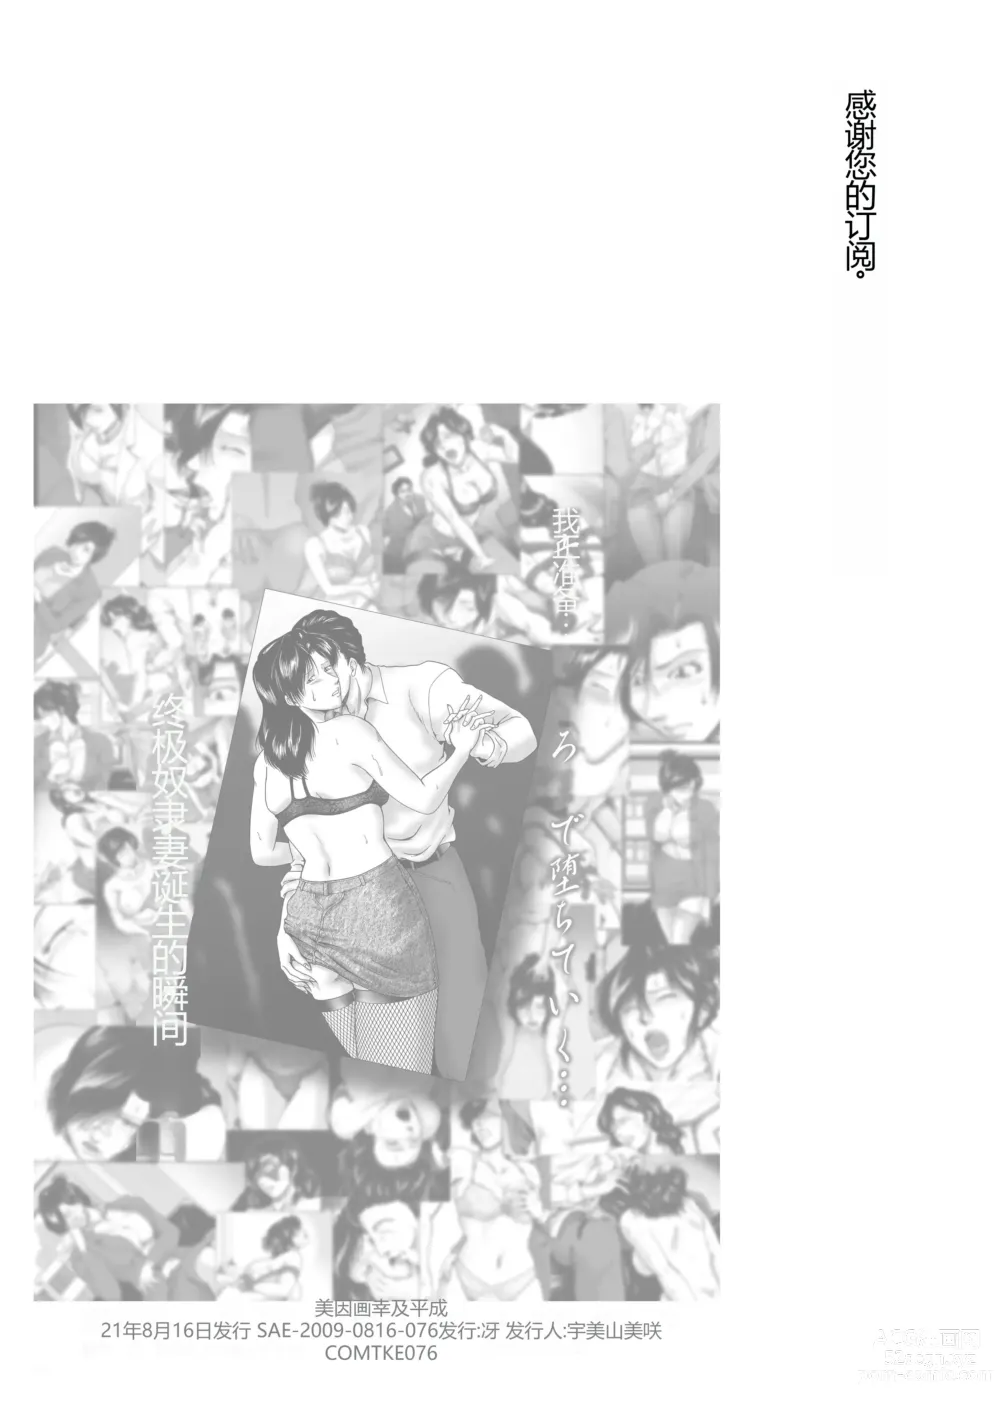 Page 112 of doujinshi Misoji Tsuma Ryoujoku Pack